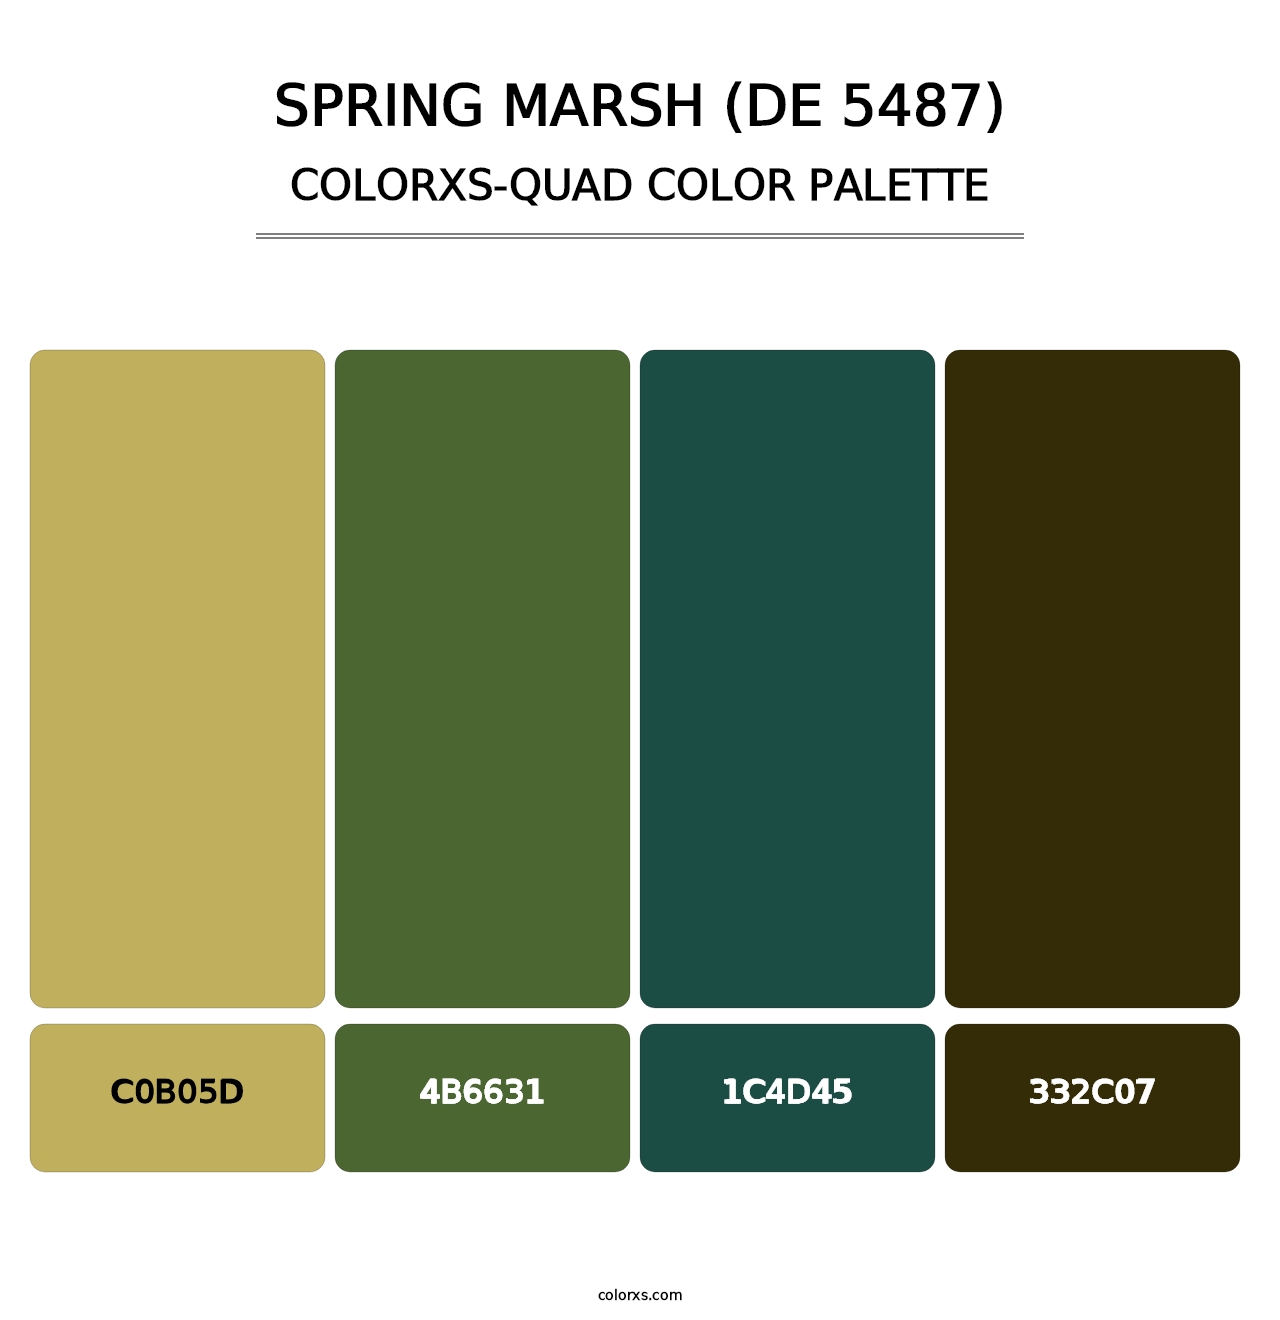 Spring Marsh (DE 5487) - Colorxs Quad Palette